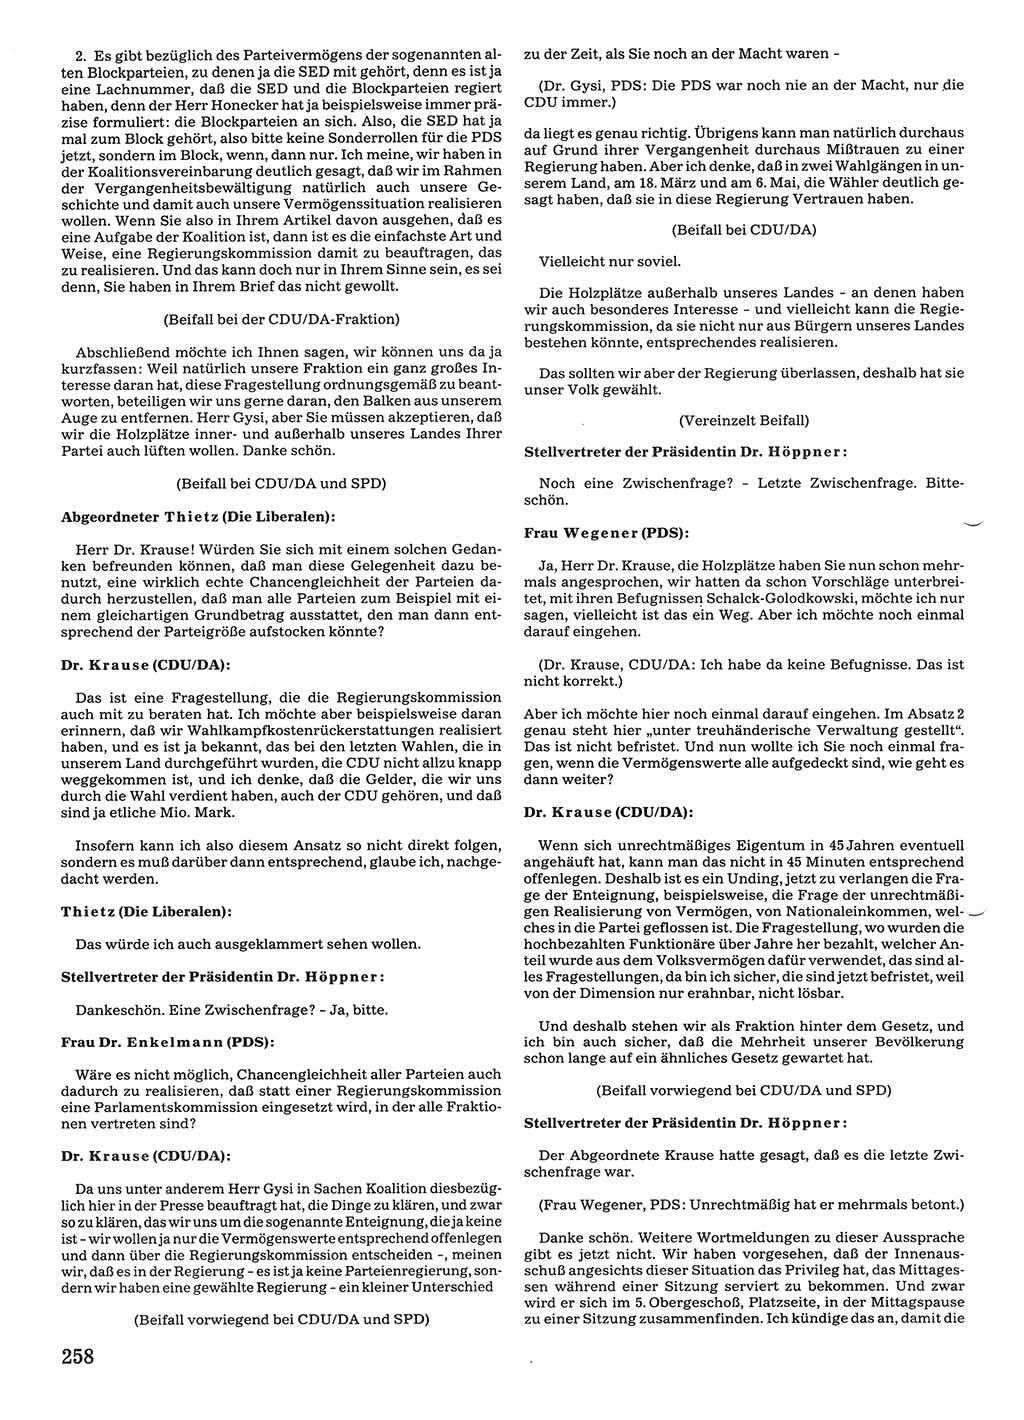 Tagungen der Volkskammer (VK) der Deutschen Demokratischen Republik (DDR), 10. Wahlperiode 1990, Seite 258 (VK. DDR 10. WP. 1990, Prot. Tg. 1-38, 5.4.-2.10.1990, S. 258)